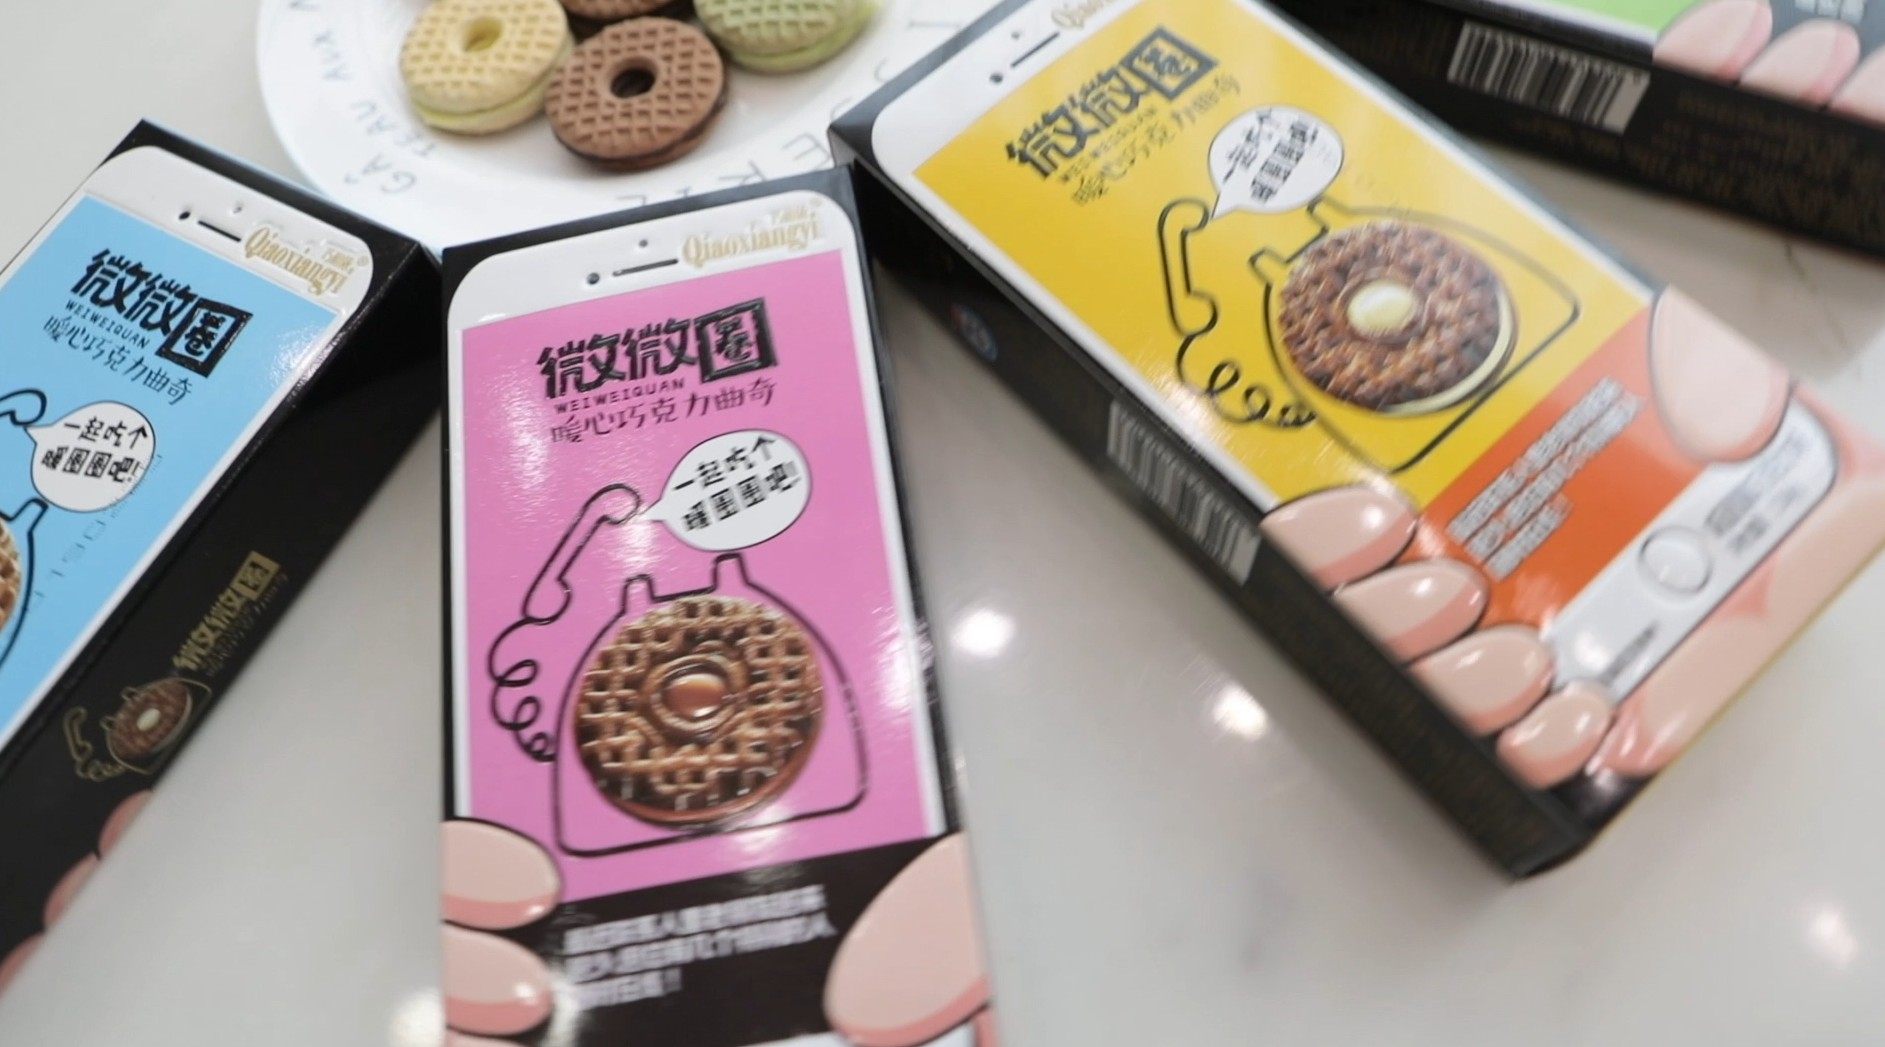 微微圈饼干食品淘宝主图视频拍摄 